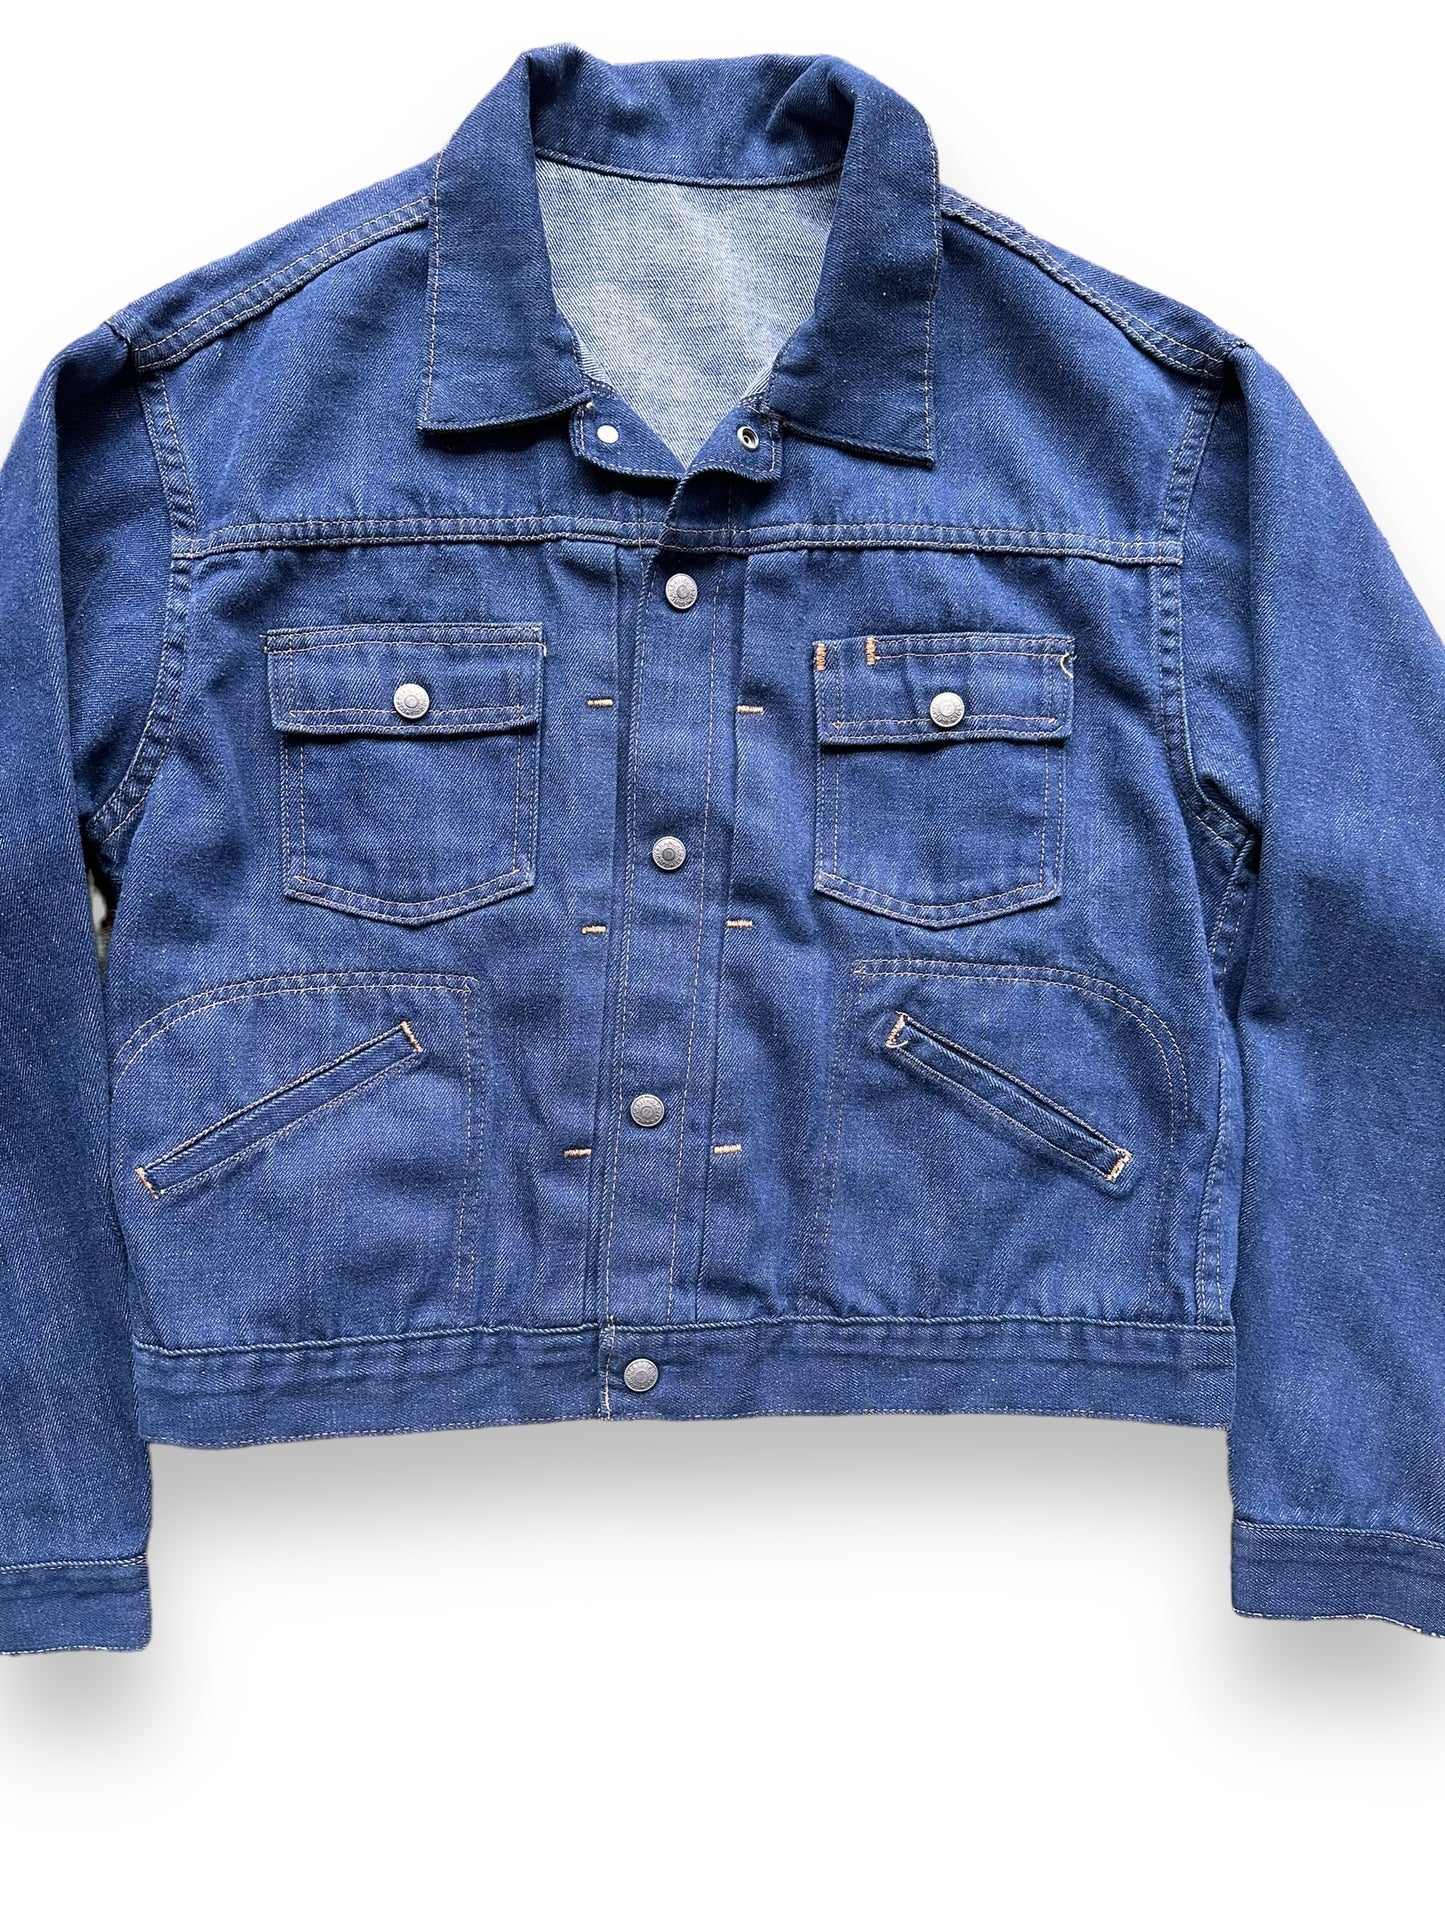 Front Detail on Vintage Ranchcraft Selvedge Denim Jacket SZ L | Vintage Denim Workwear Seattle | Seattle Vintage Denim